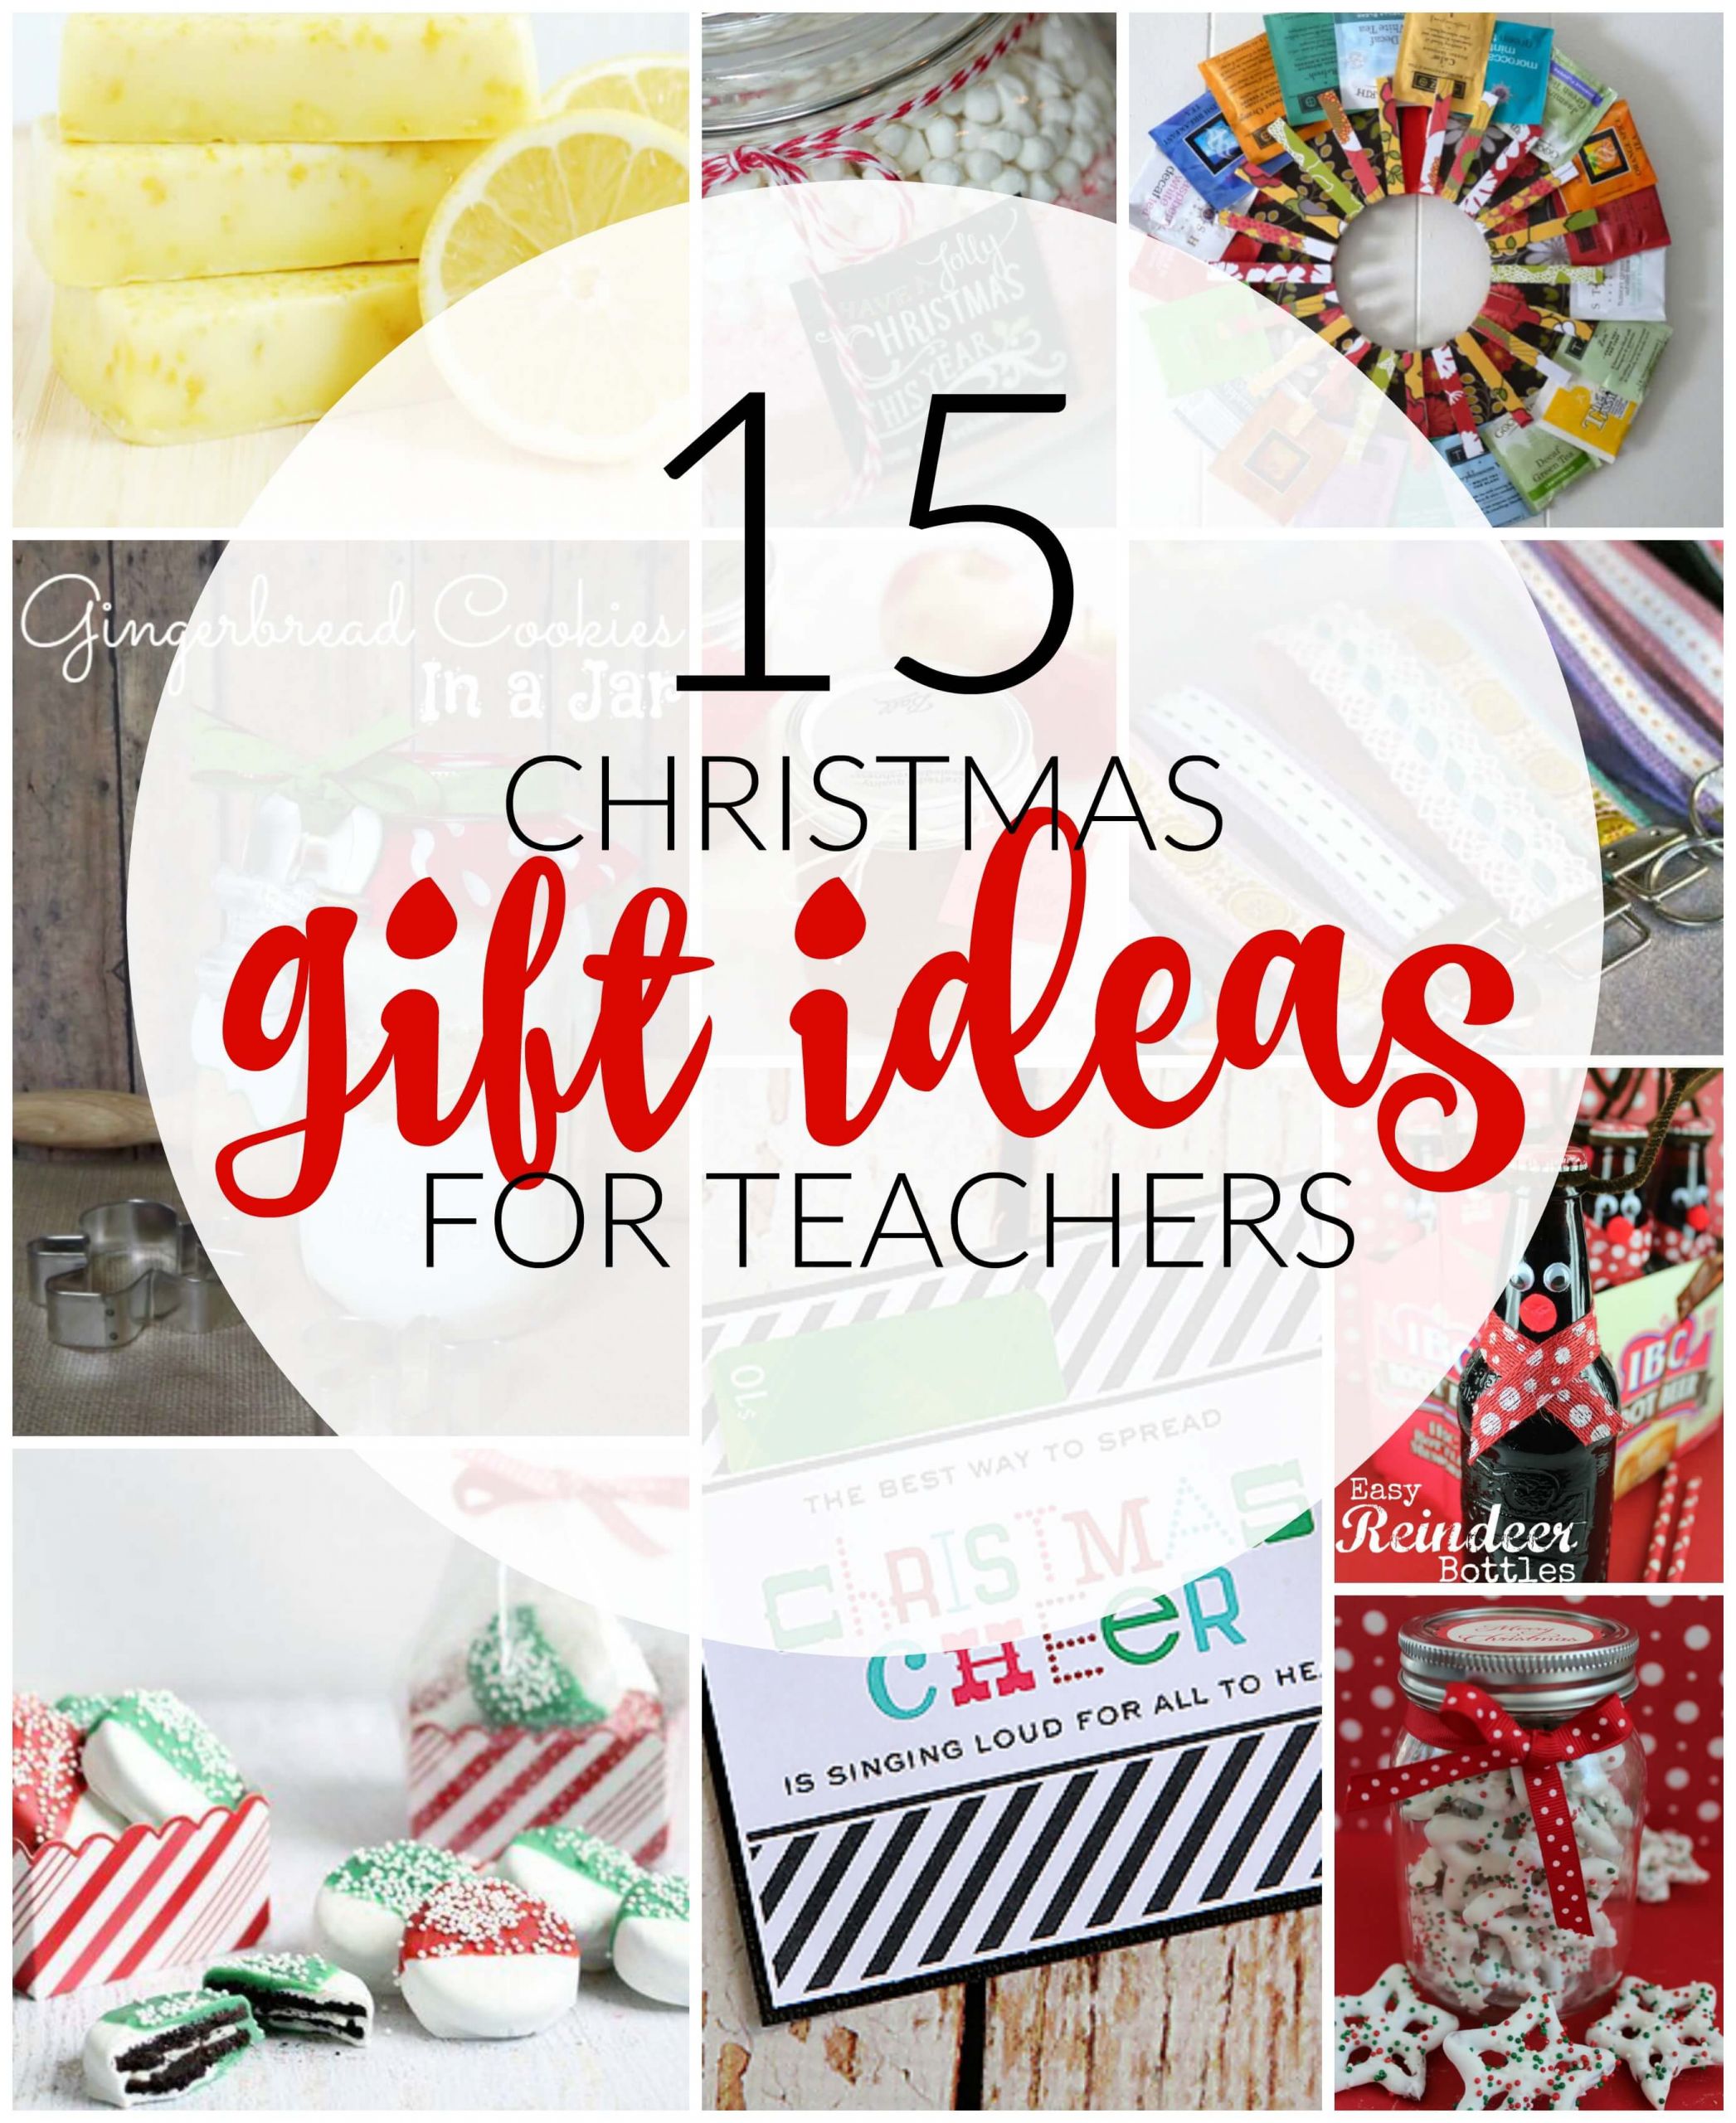 Teacher Holiday Gift Ideas
 25 Incredible Teacher Christmas Gift Ideas